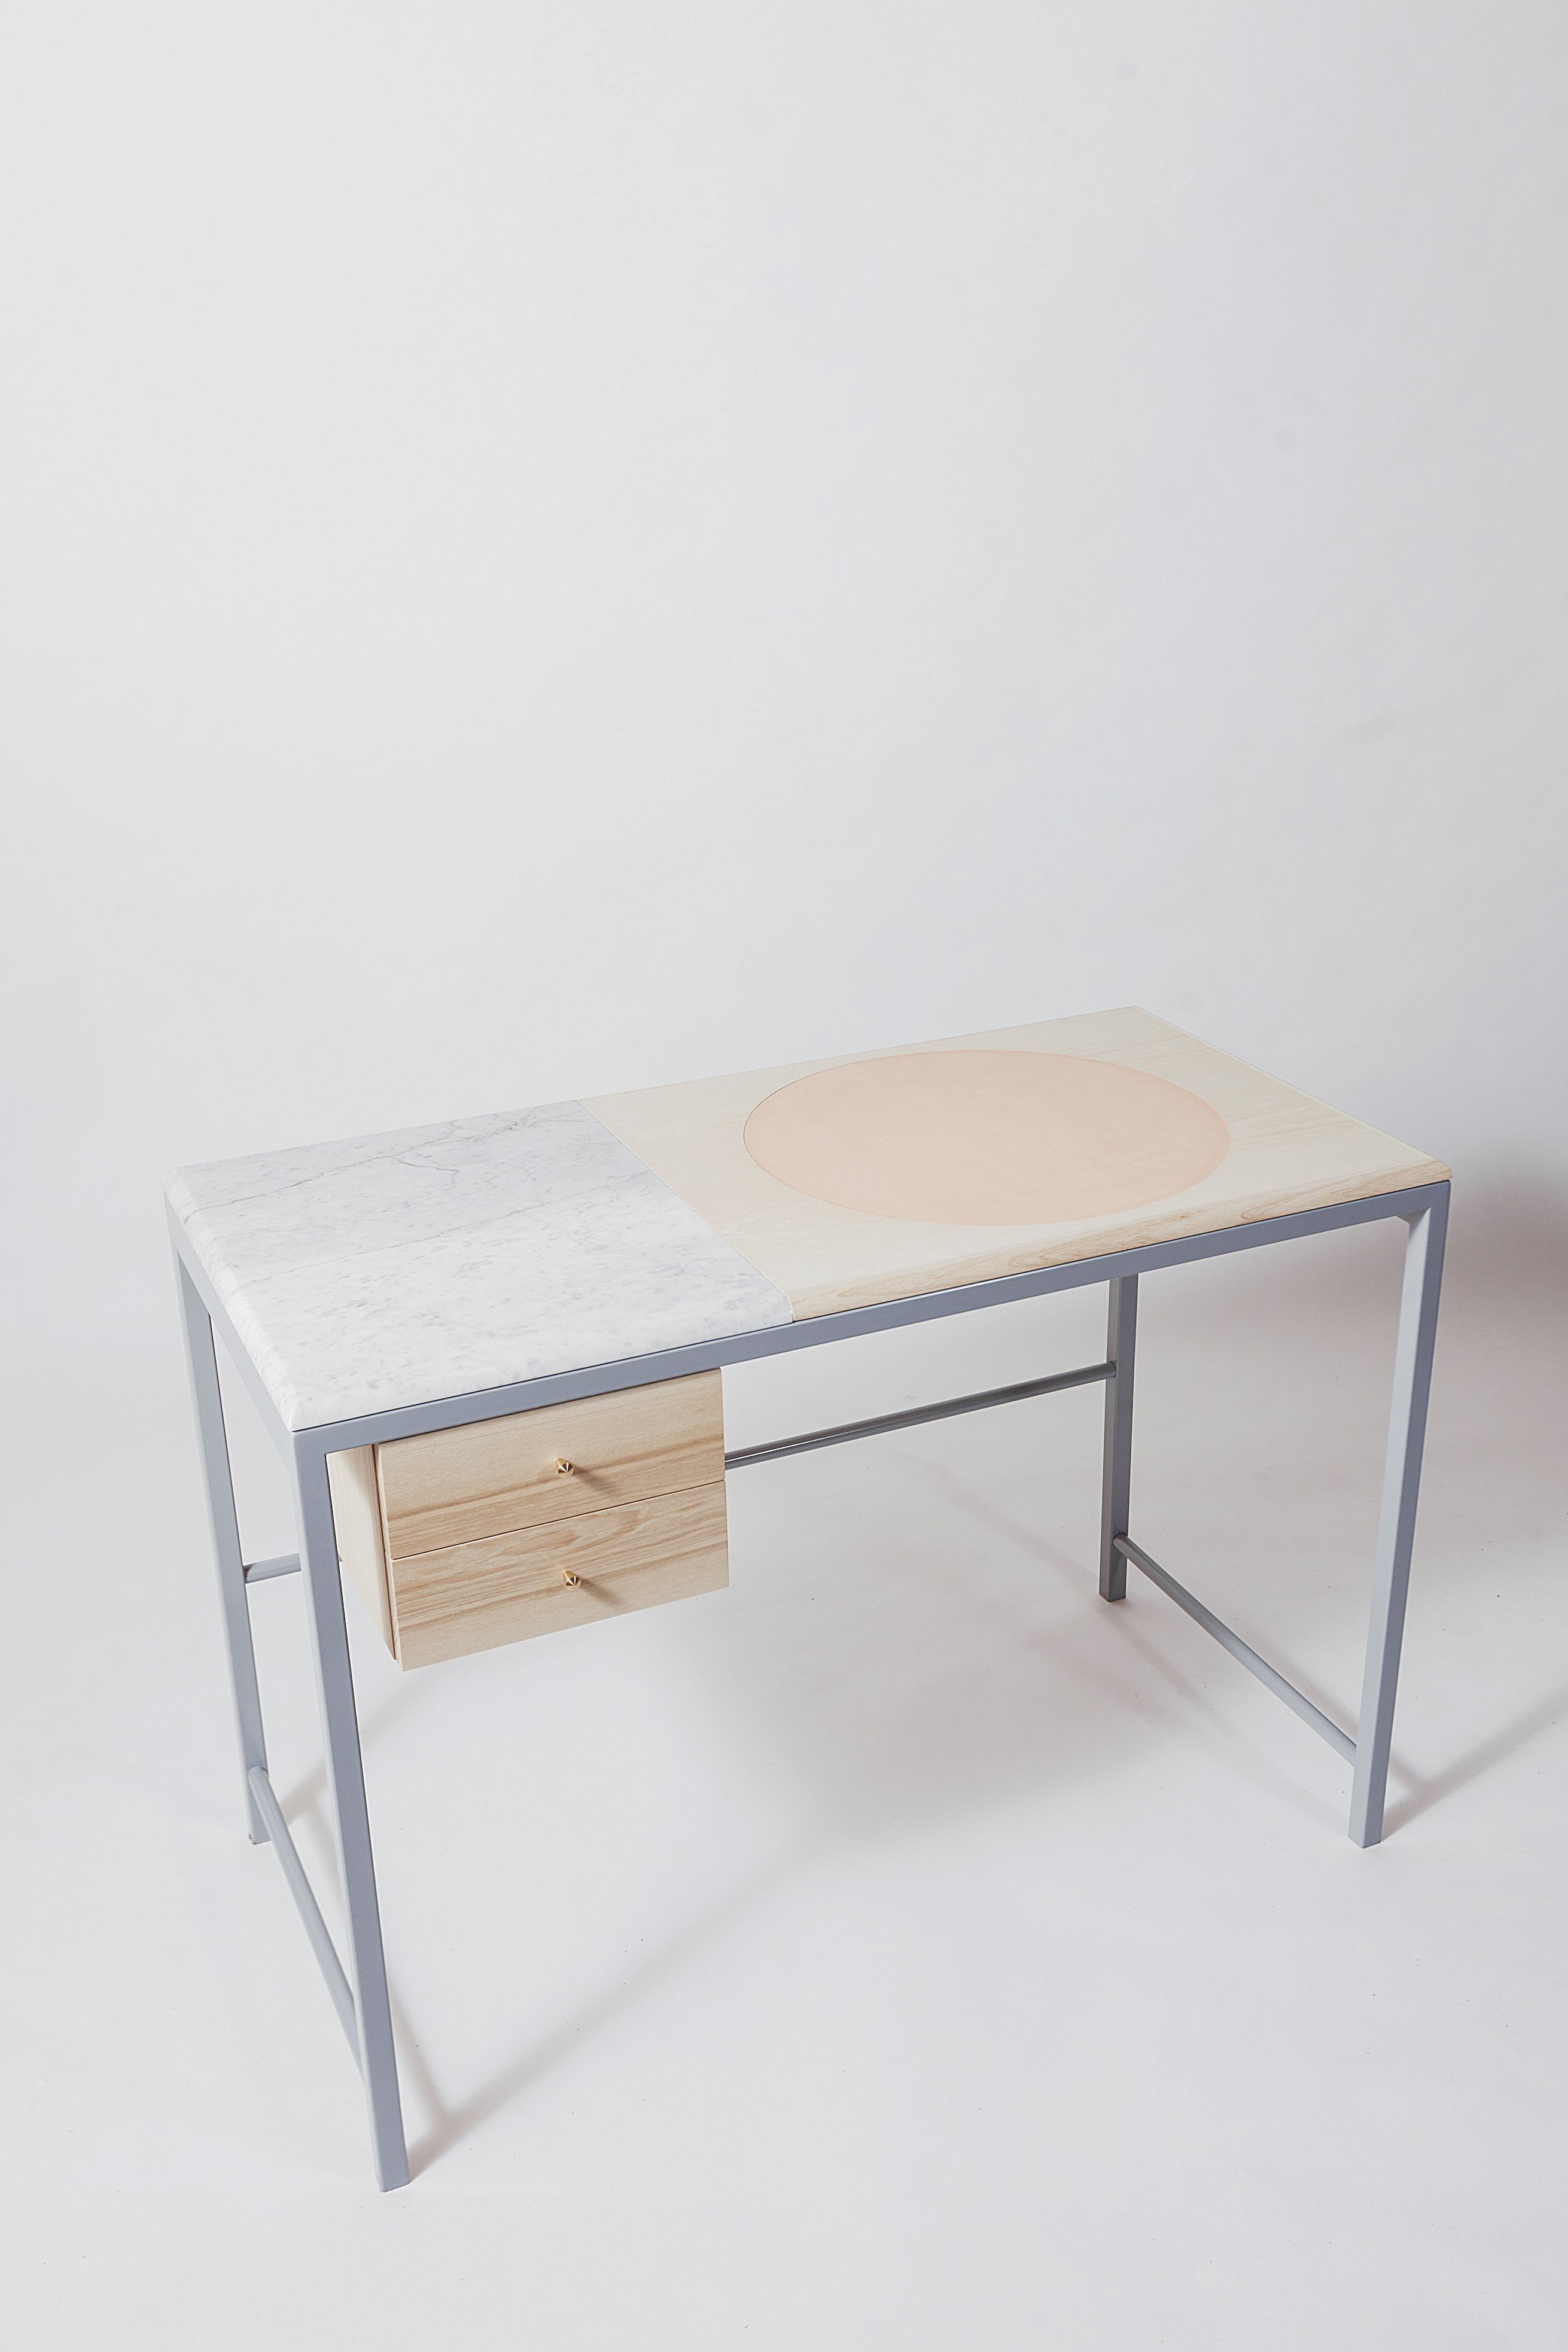 22 minimalist furniture ideas - best modern minimalism room furniture DJDWIIE